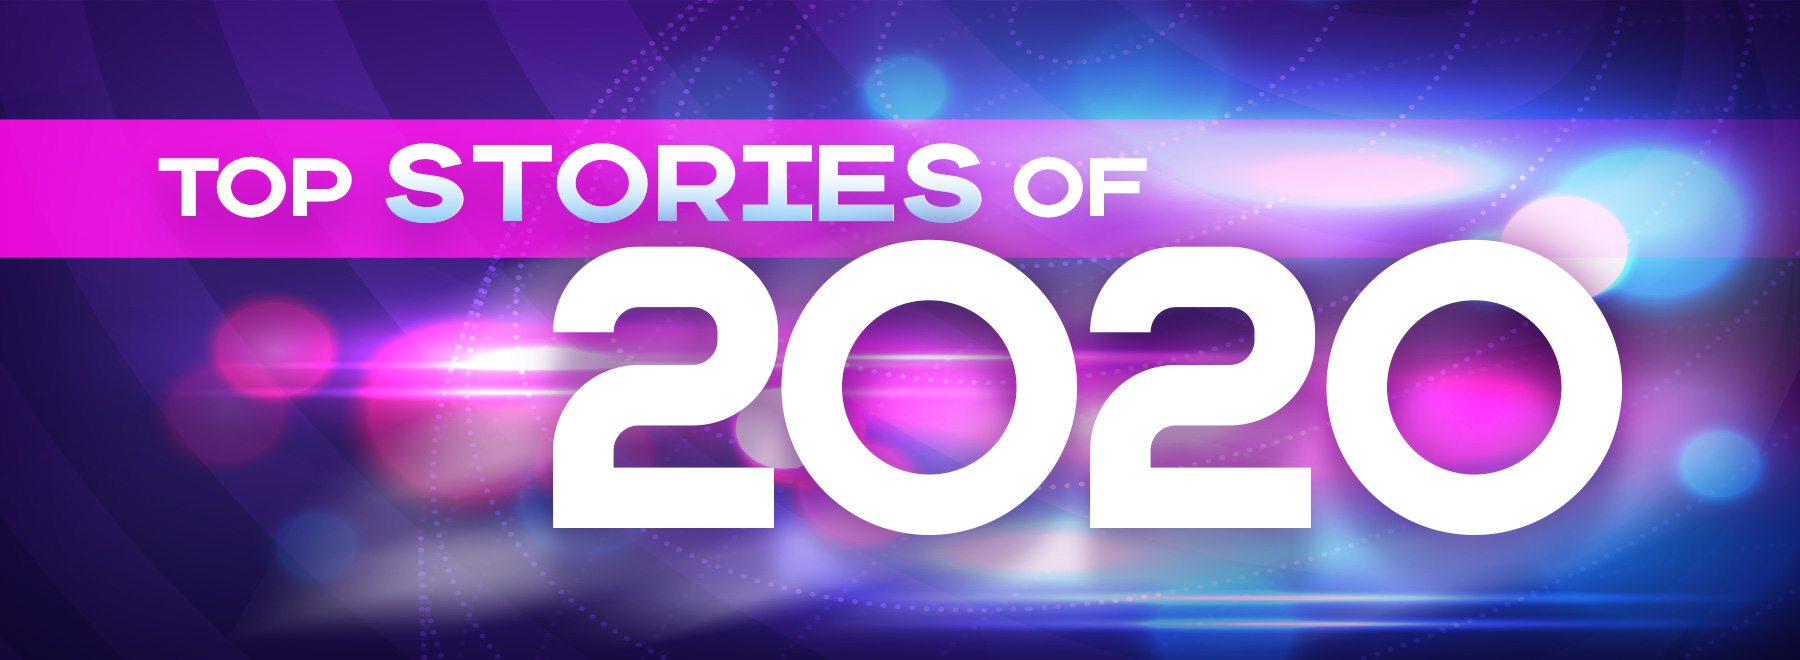 Top Stories of 2020